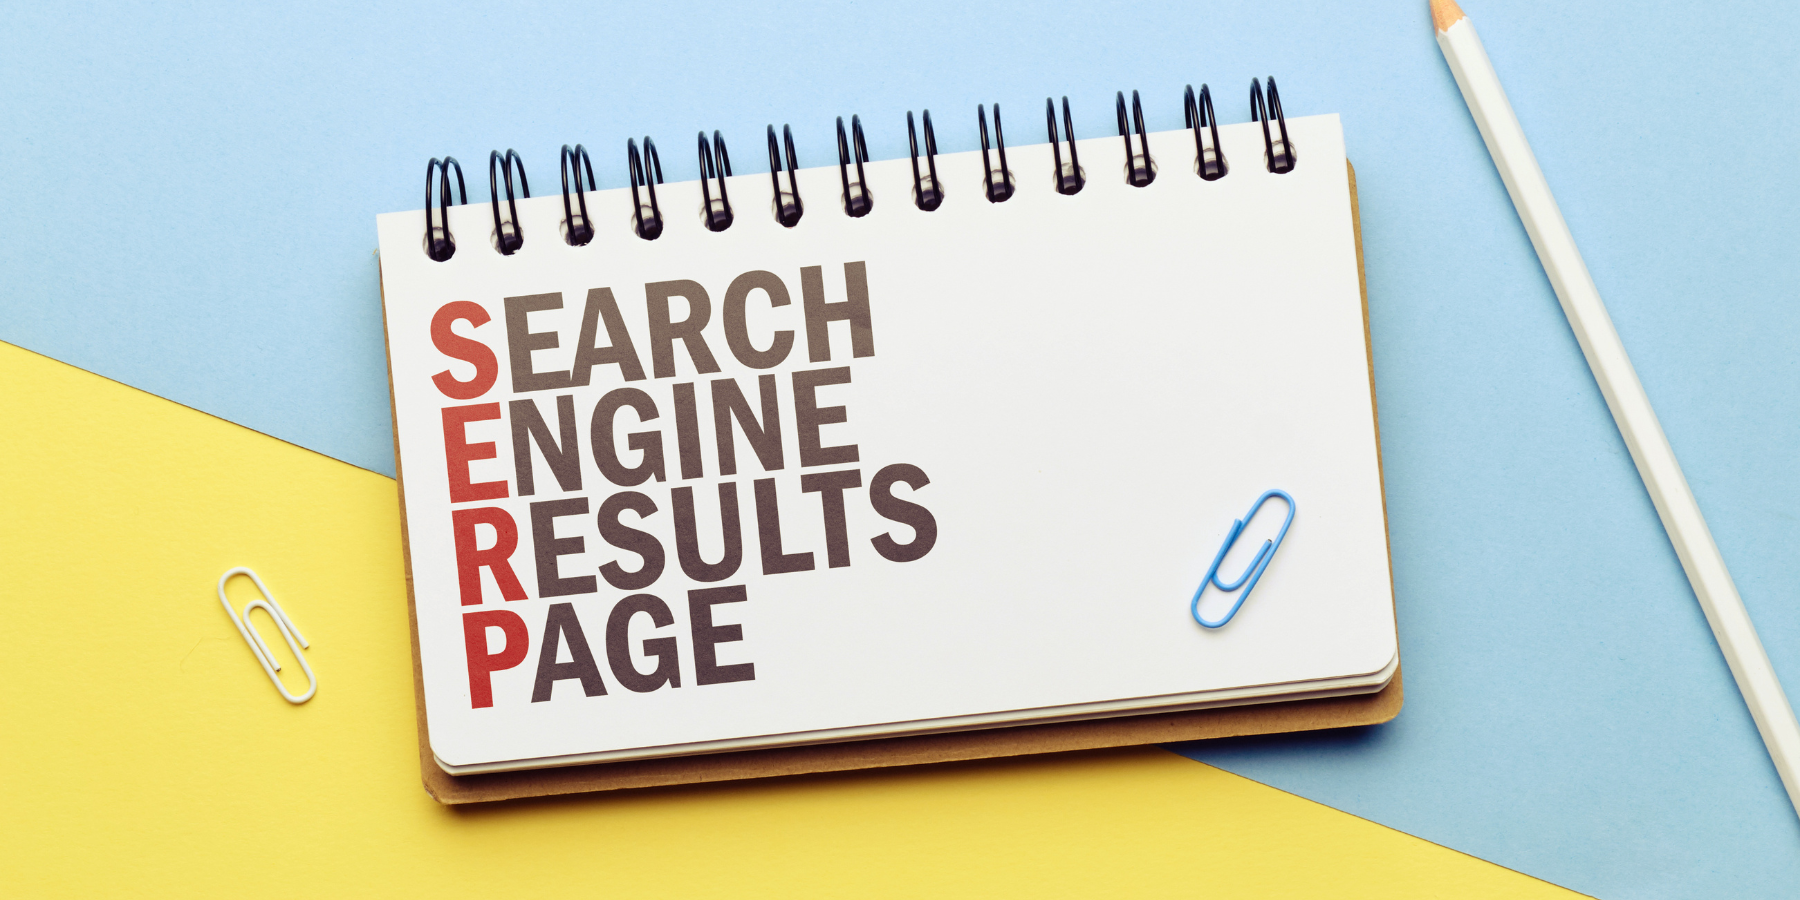 Explication du sigle SERP qui designe la page des resultats sous google : Search Engine Results Page